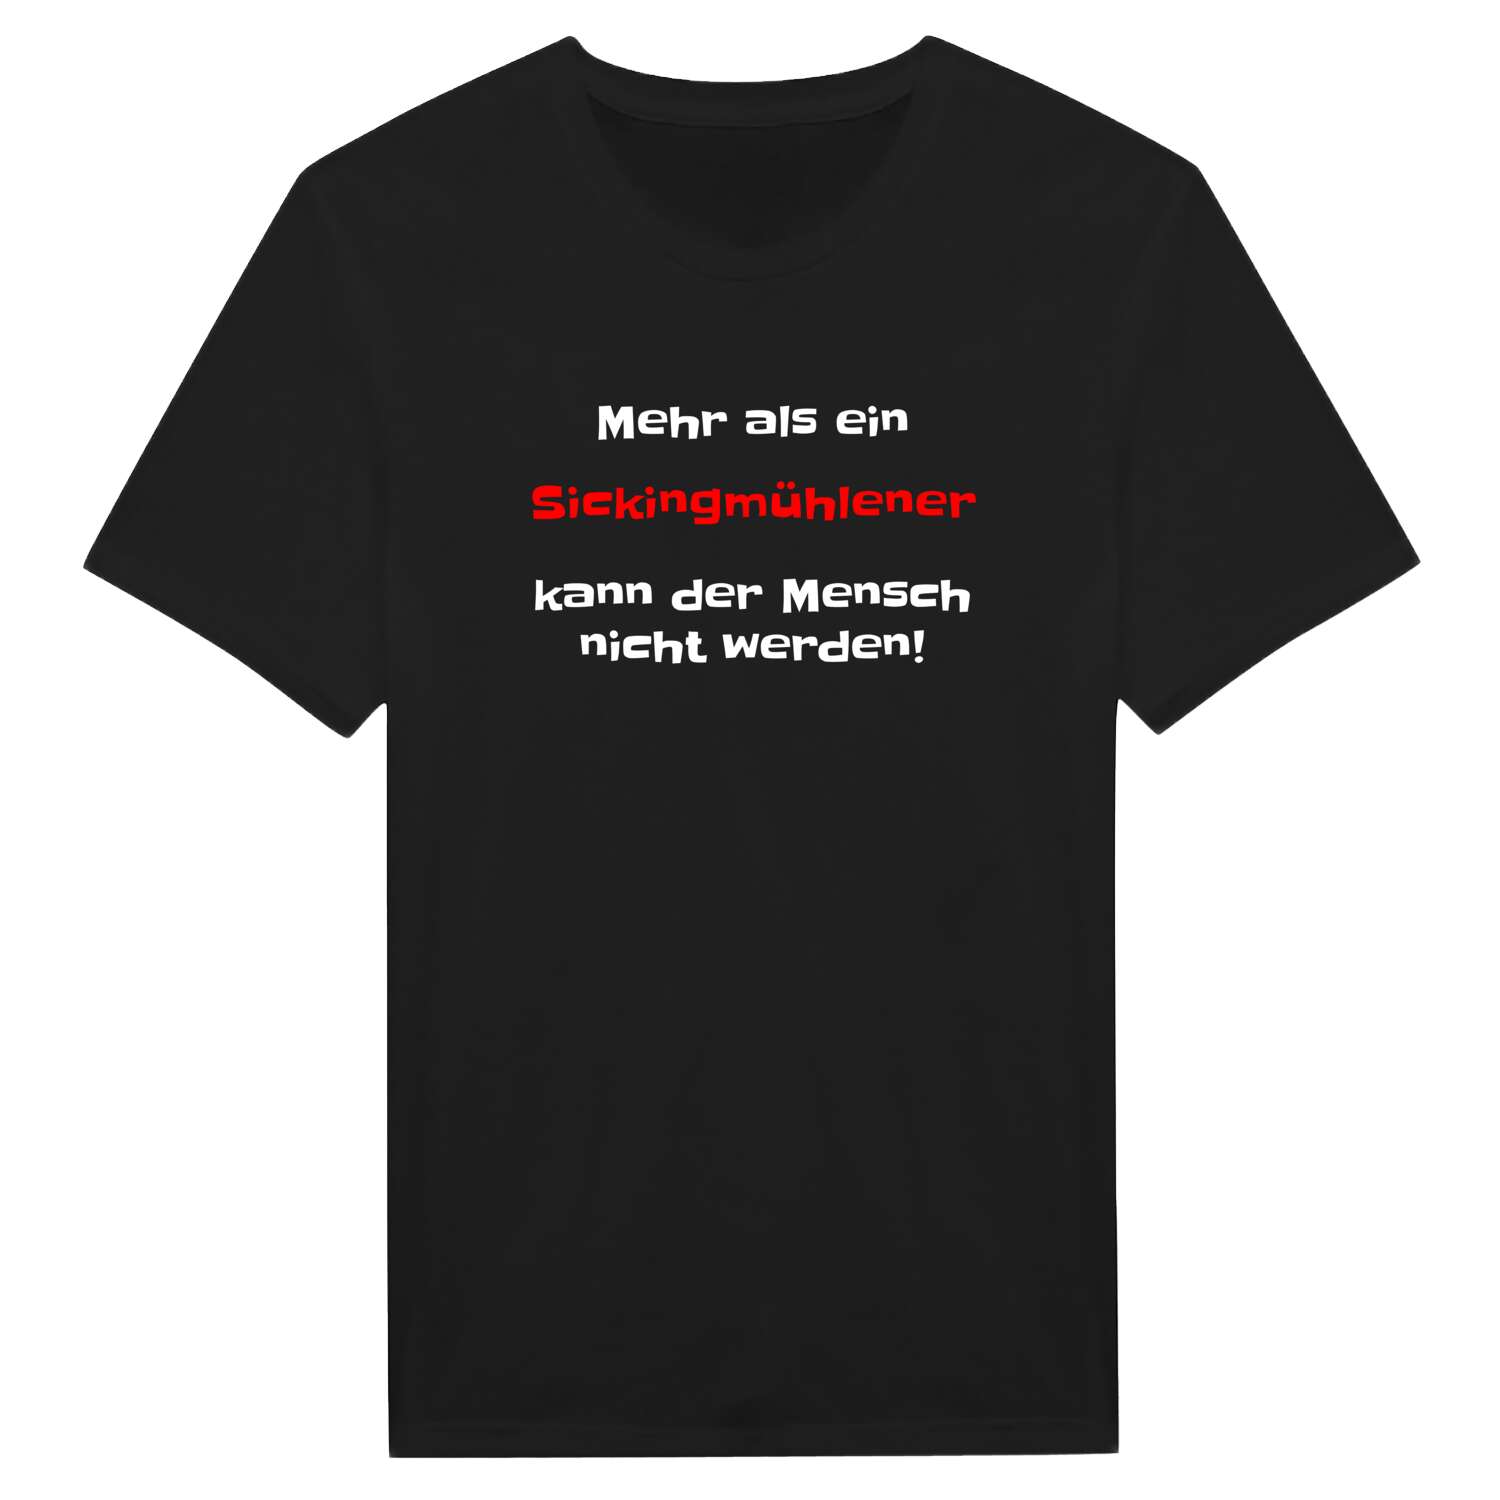 Sickingmühle T-Shirt »Mehr als ein«